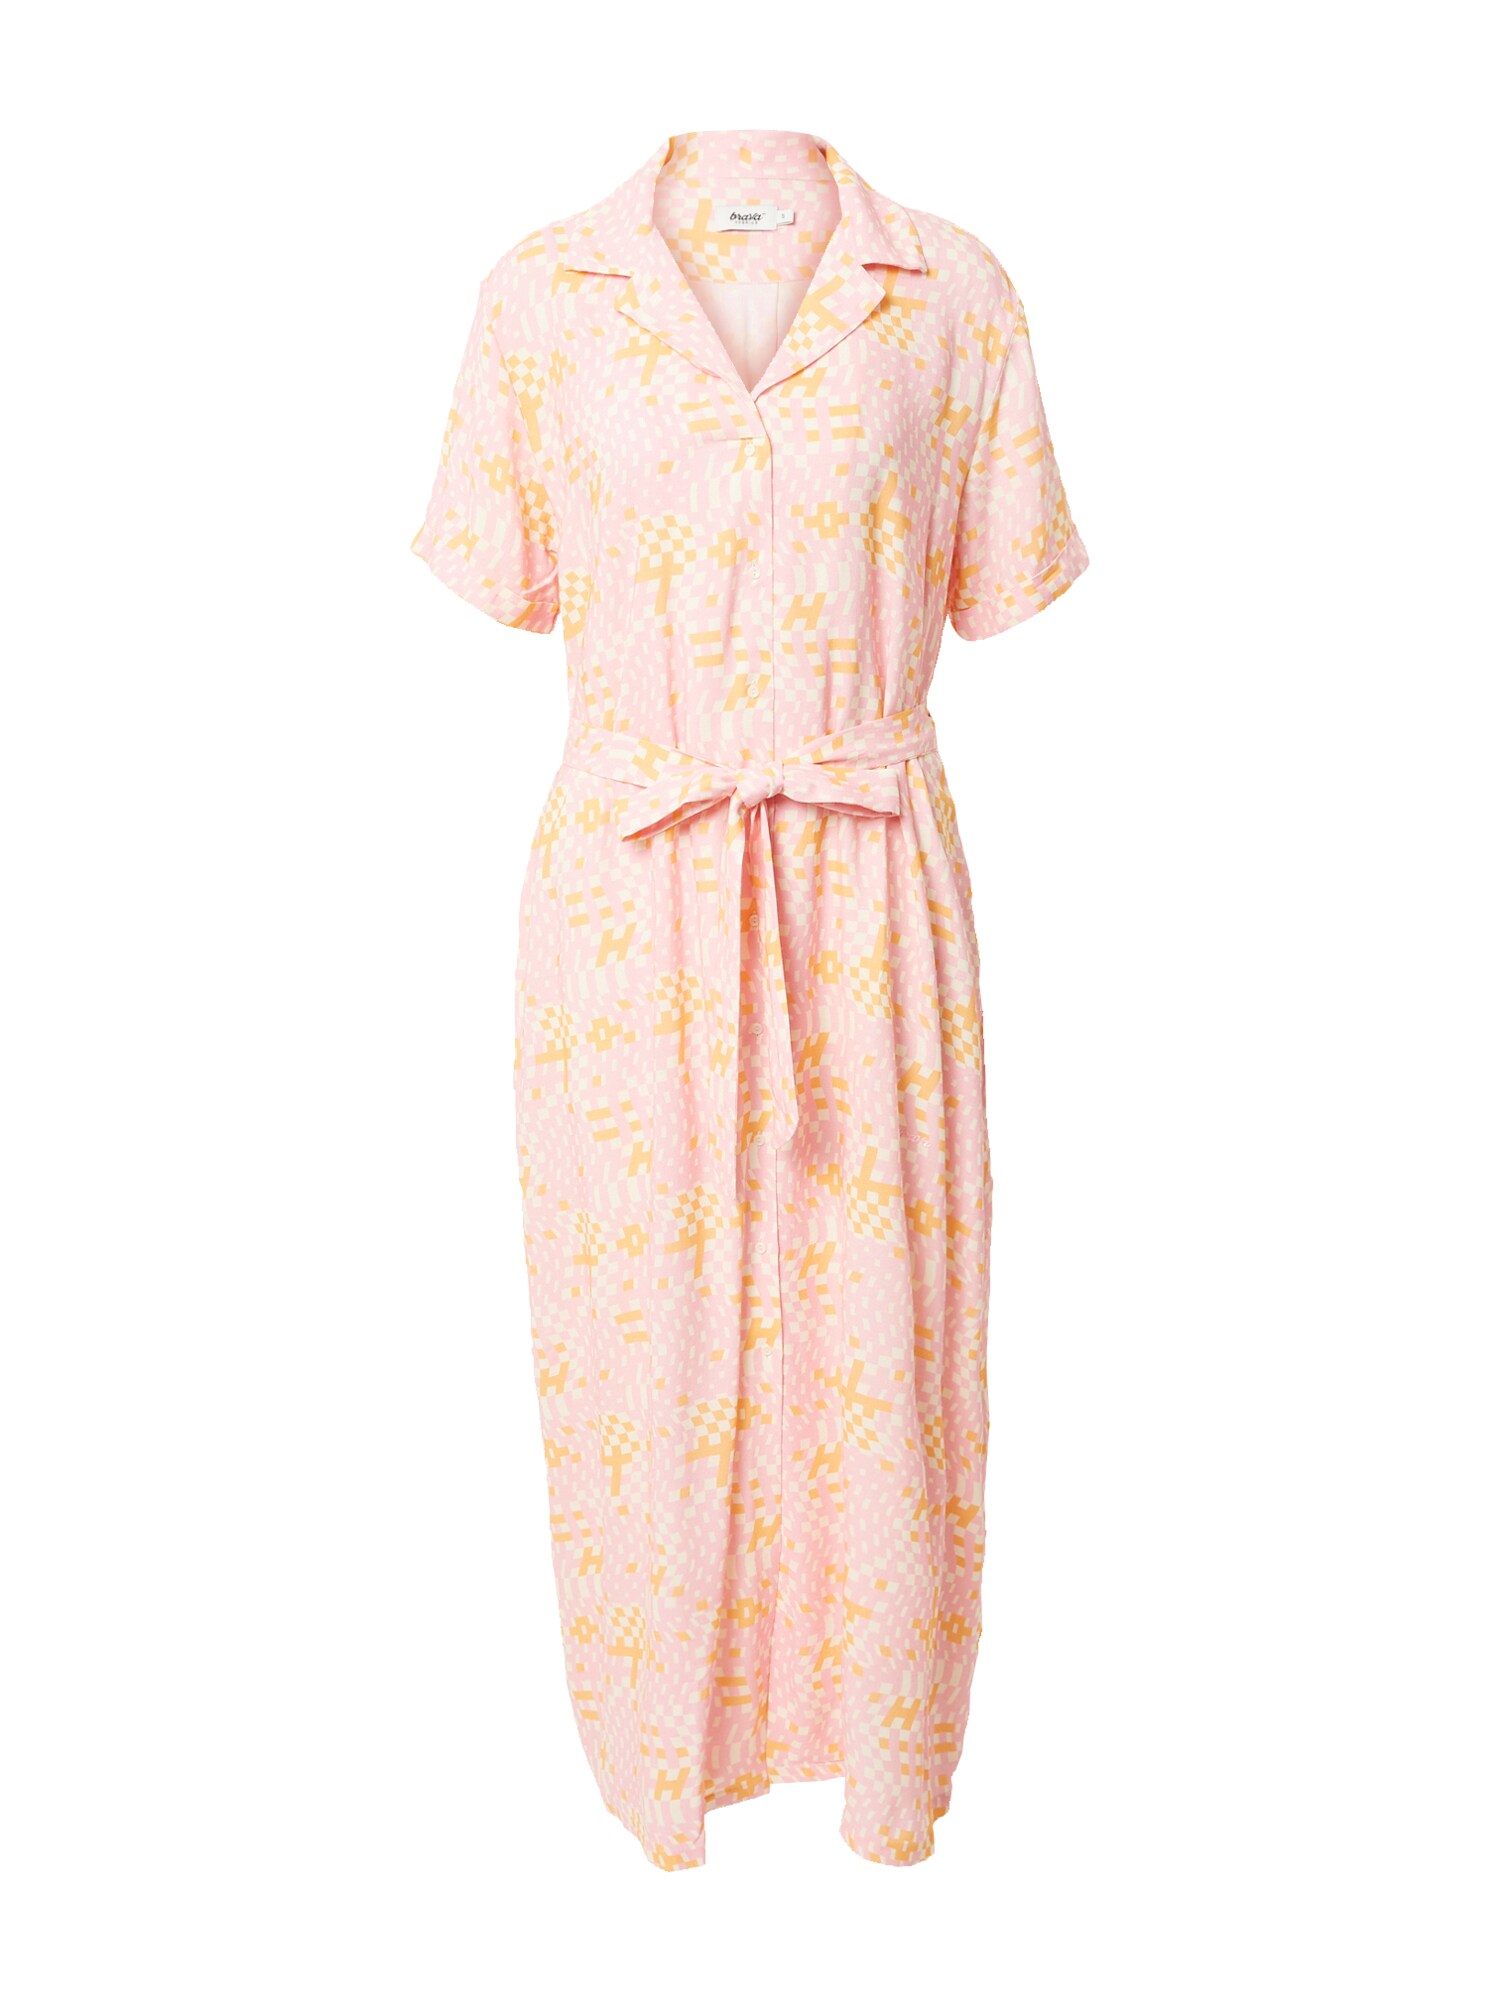 Brava Fabrics Palaidinės tipo suknelė 'Dizzy' oranžinė / rožių spalva / balta